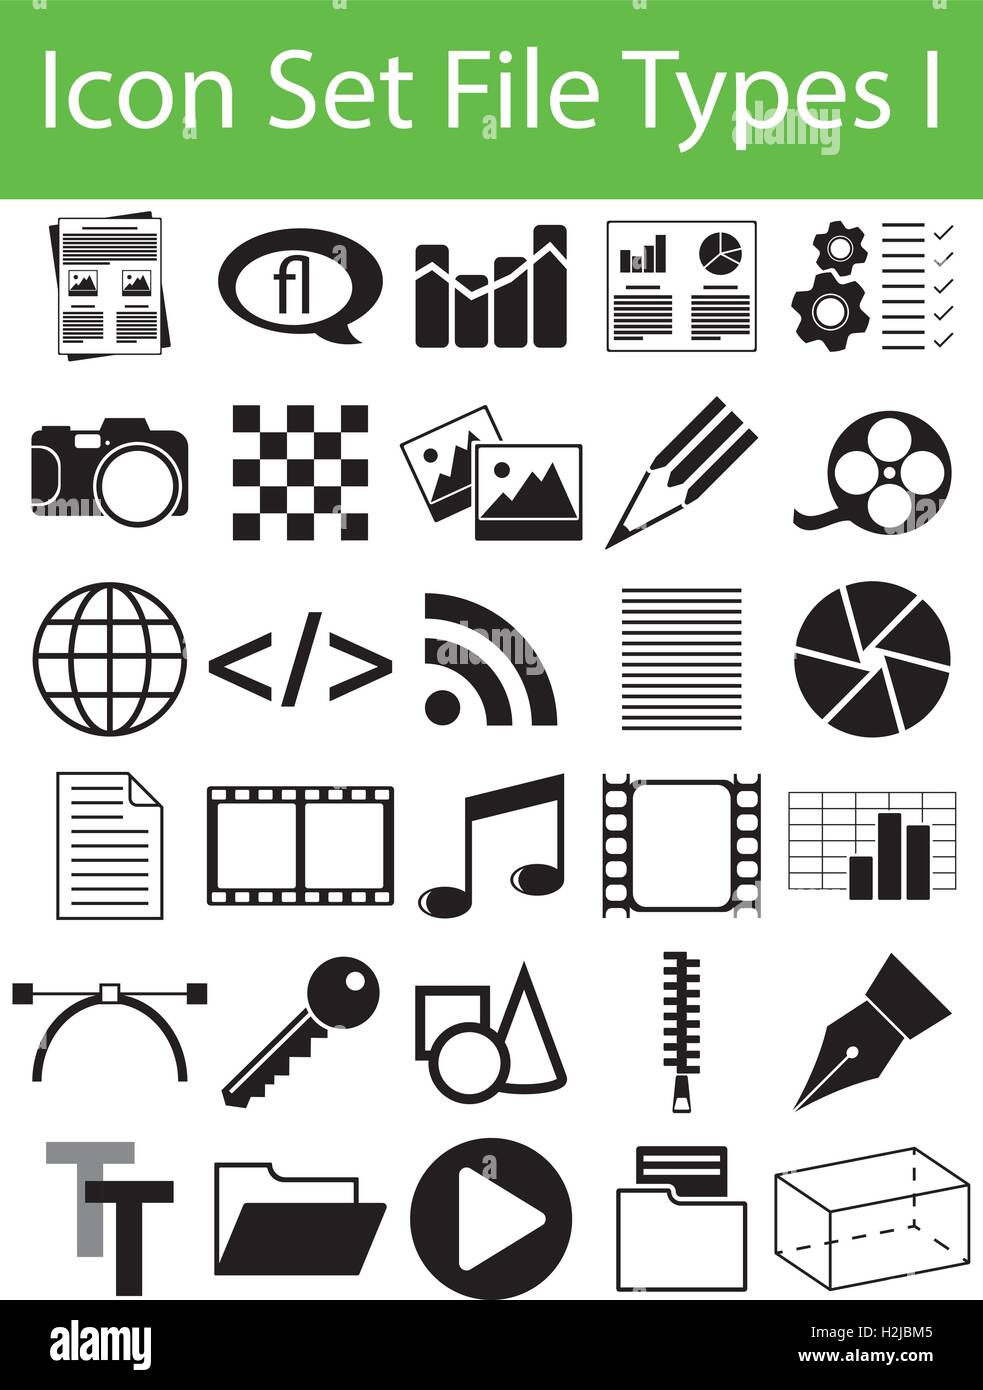 Establecer los tipos de archivo de icono I con 30 iconos para el uso creativo de diseño gráfico Ilustración del Vector